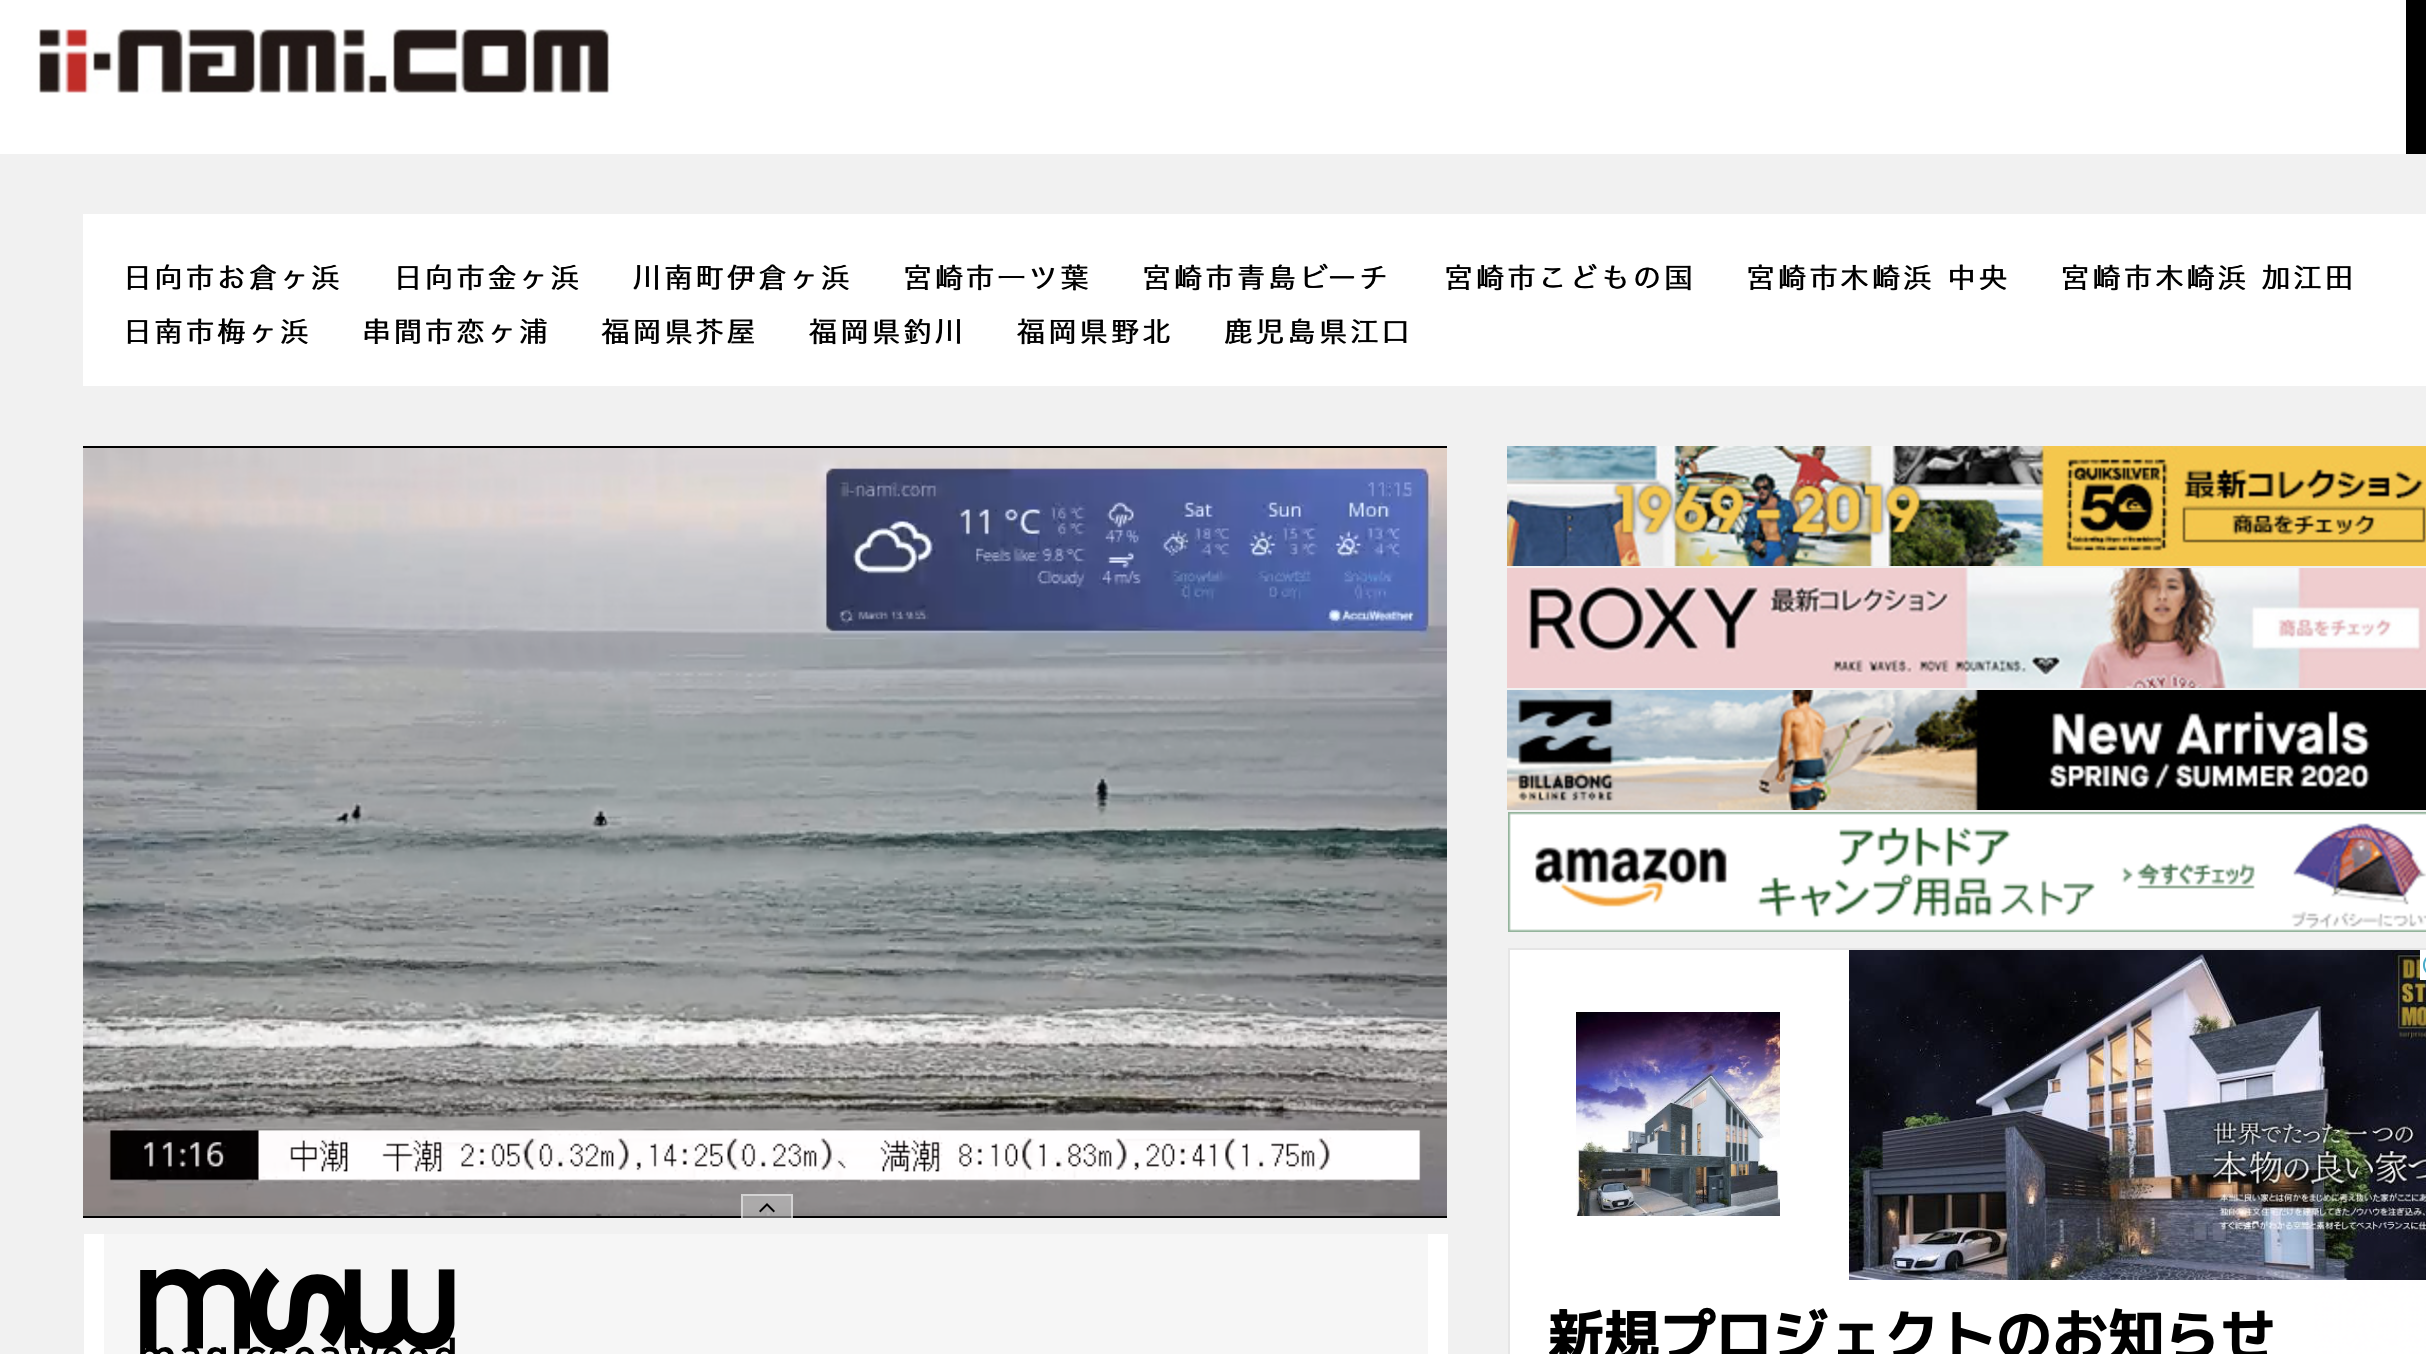 ii-nami.com「宮崎・福岡・鹿児島のサーフィン・波情報ライブカメラサイト」